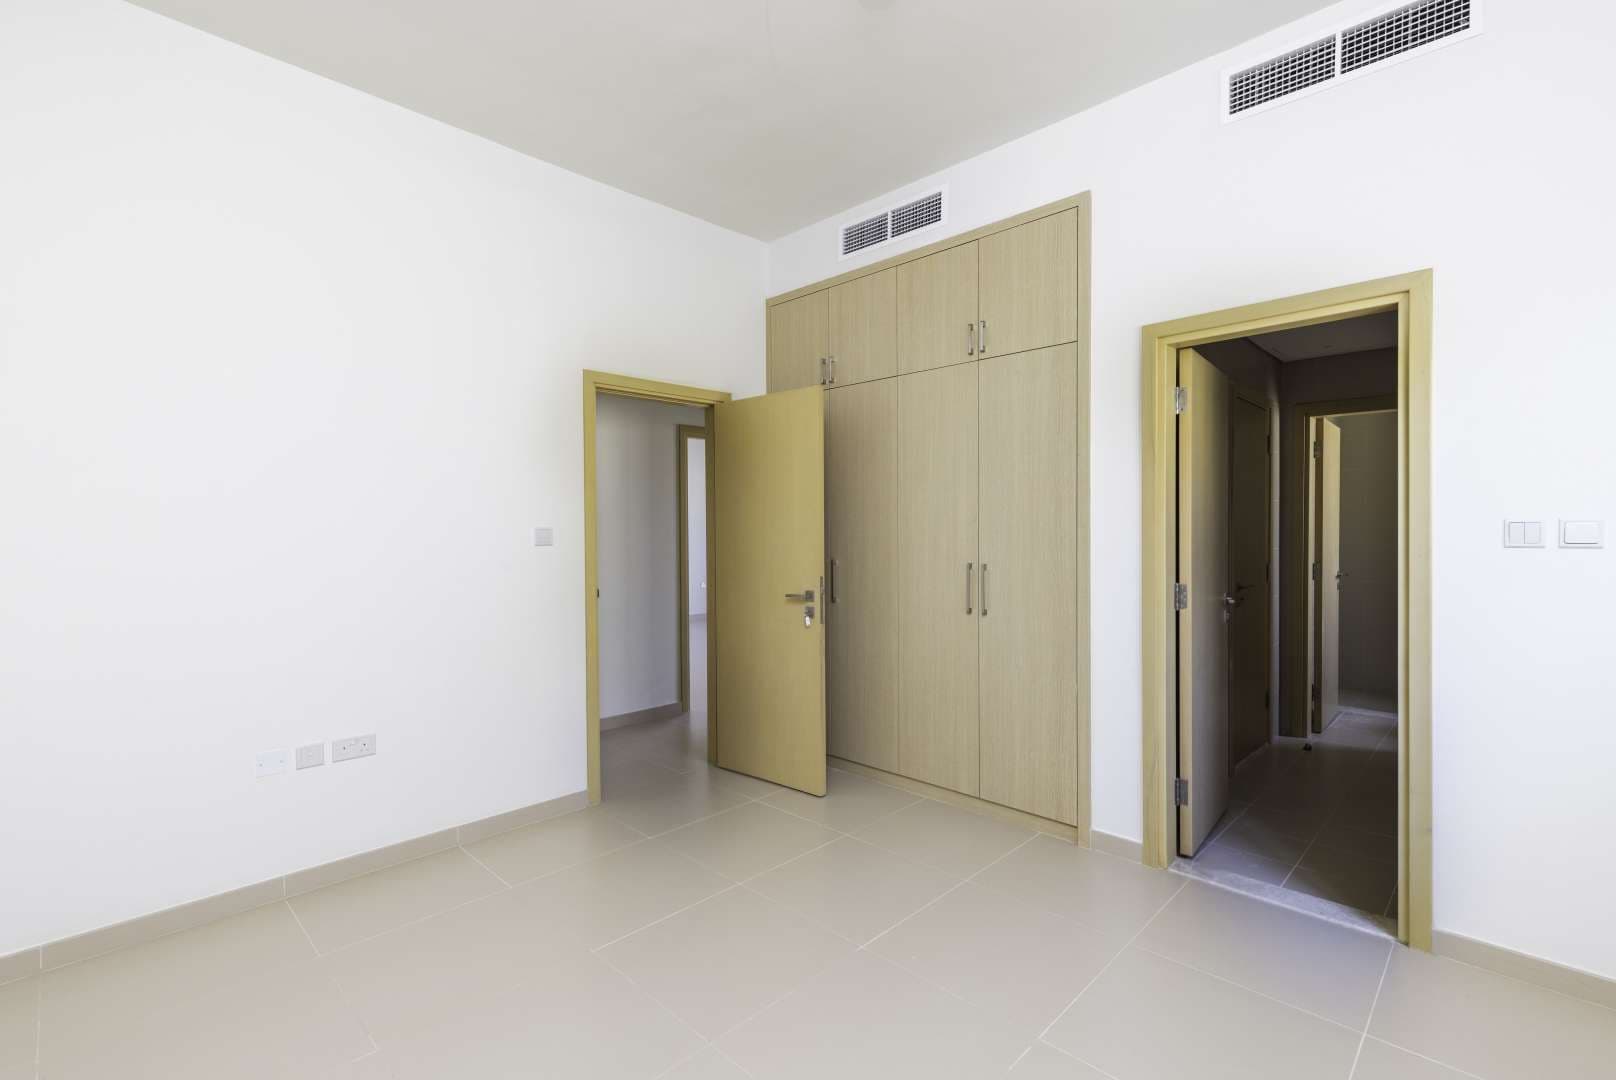 4 Bedroom Villa For Rent La Quinta Lp10469 20191e5619eef600.jpg